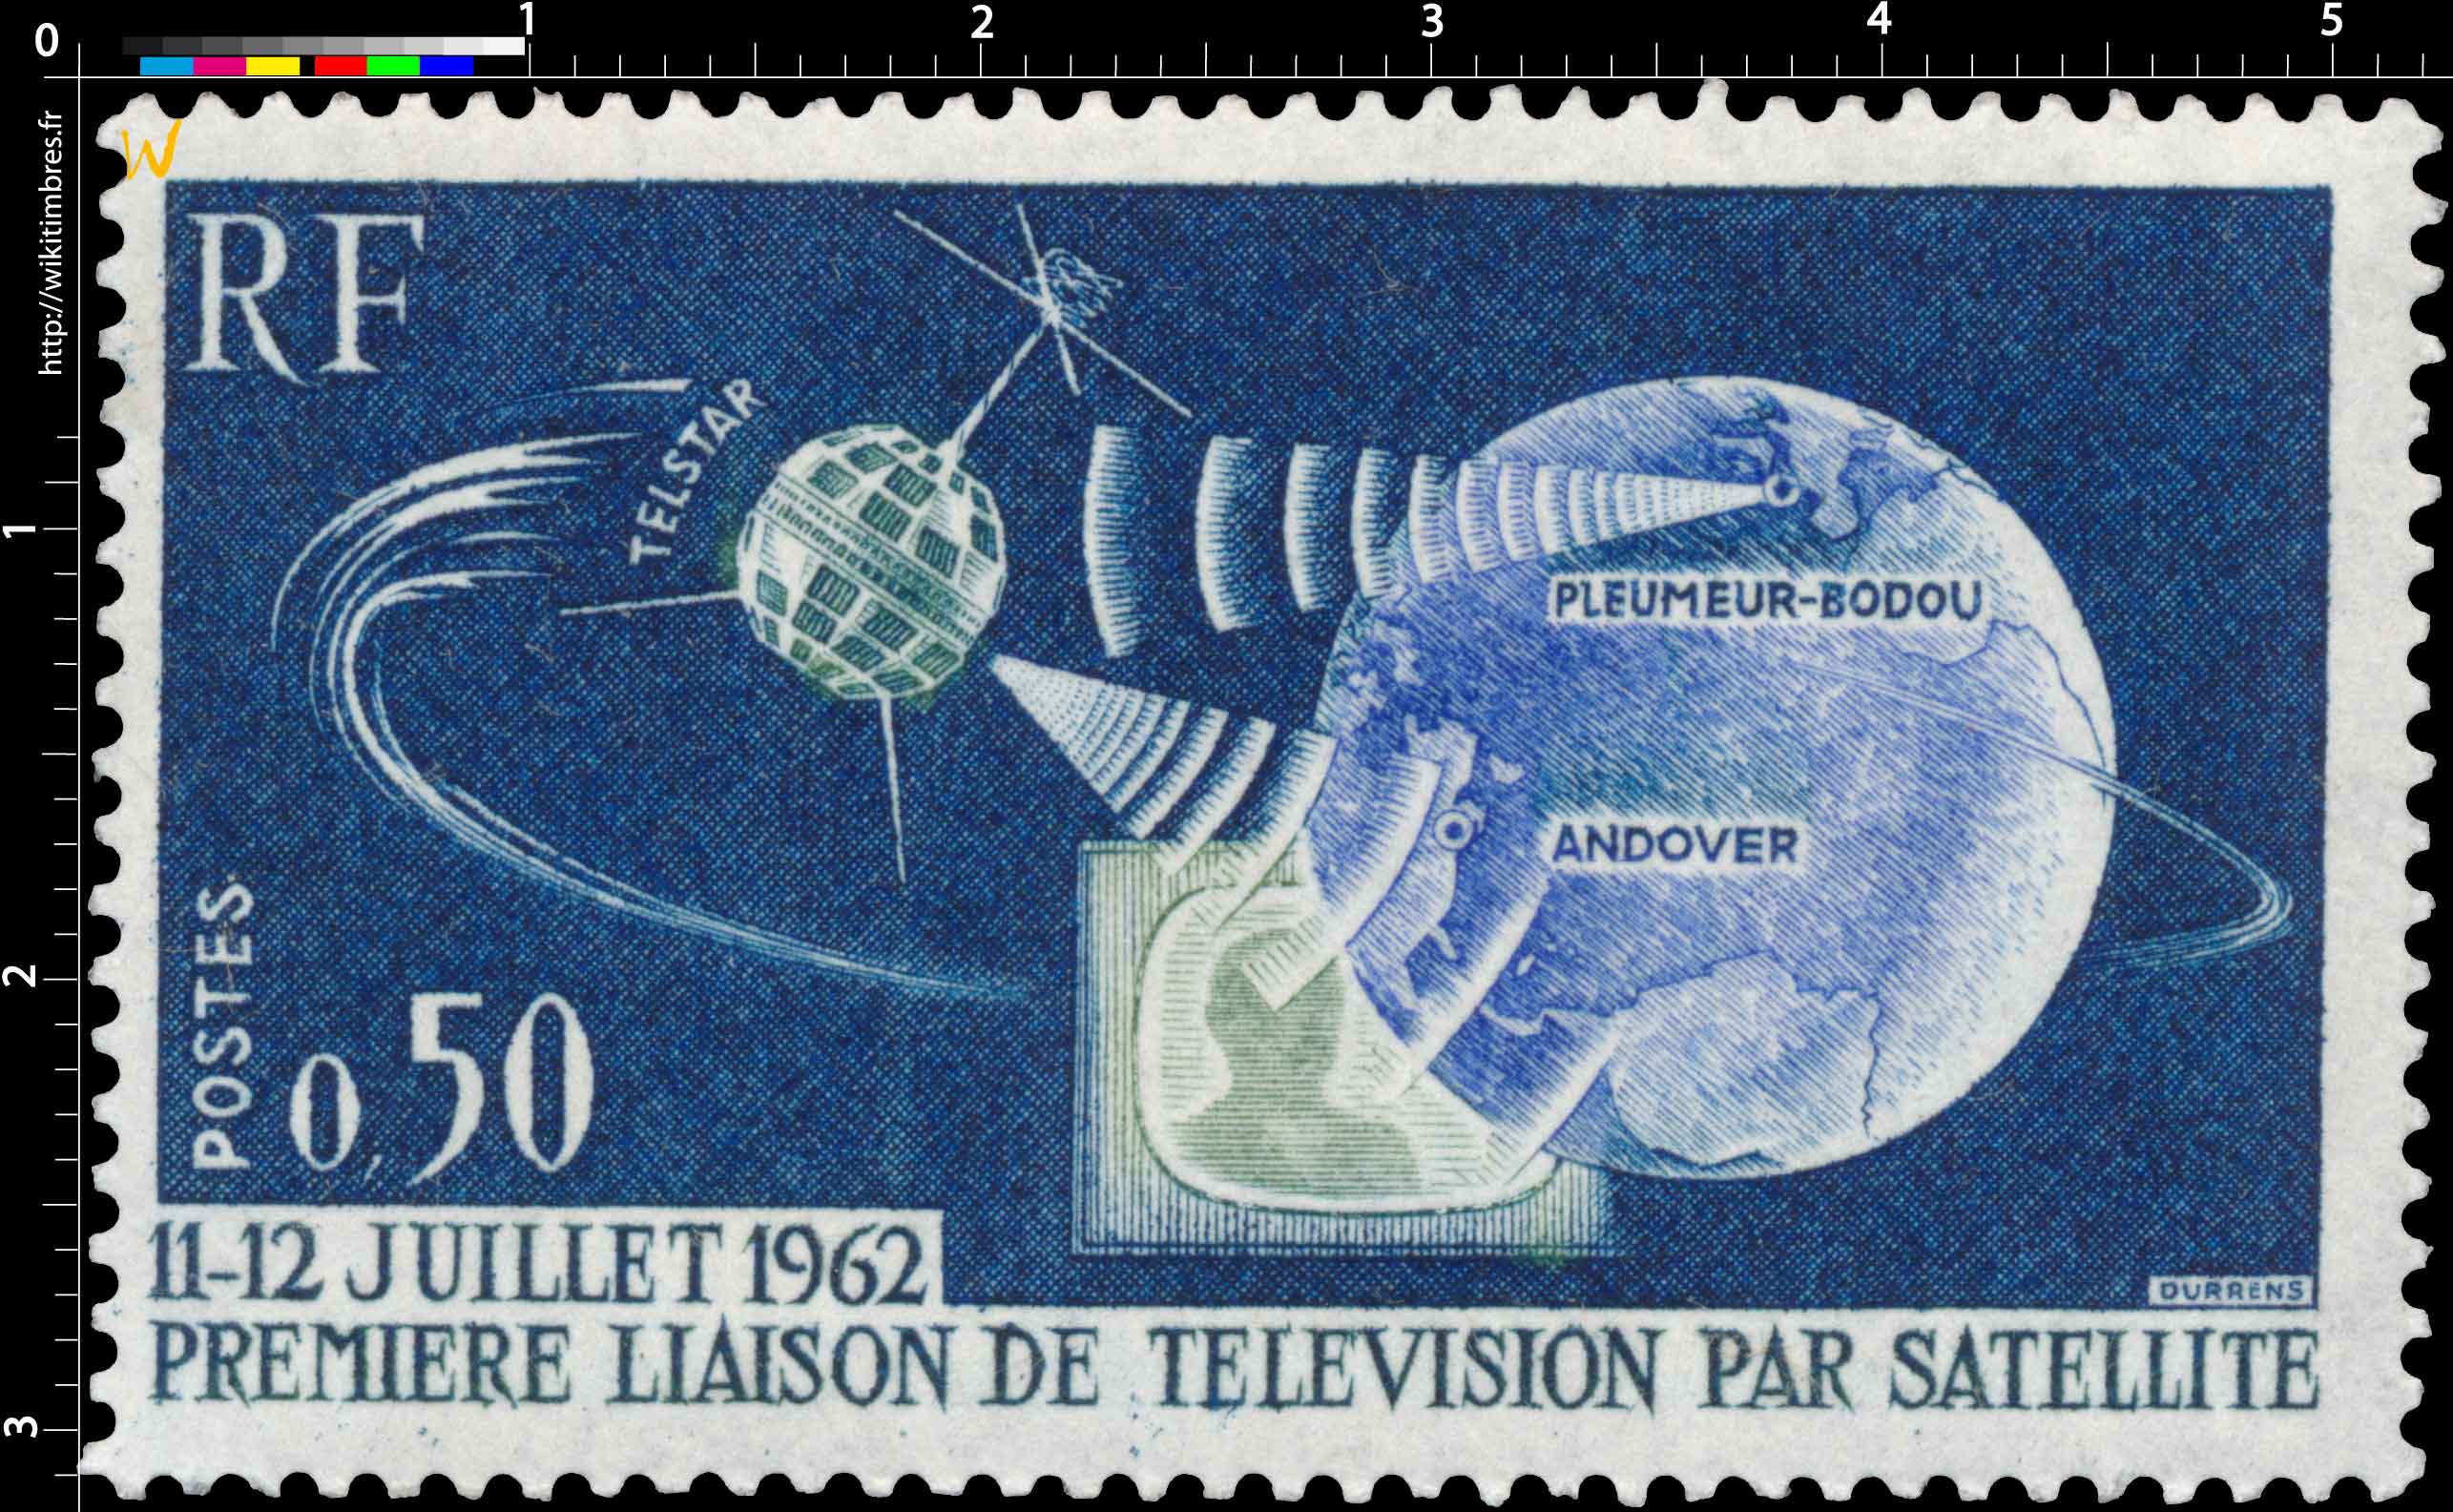 11-12 JUILLET 1962 PREMIÈRE LIAISON DE TÉLÉVISION PAR SATELLITE